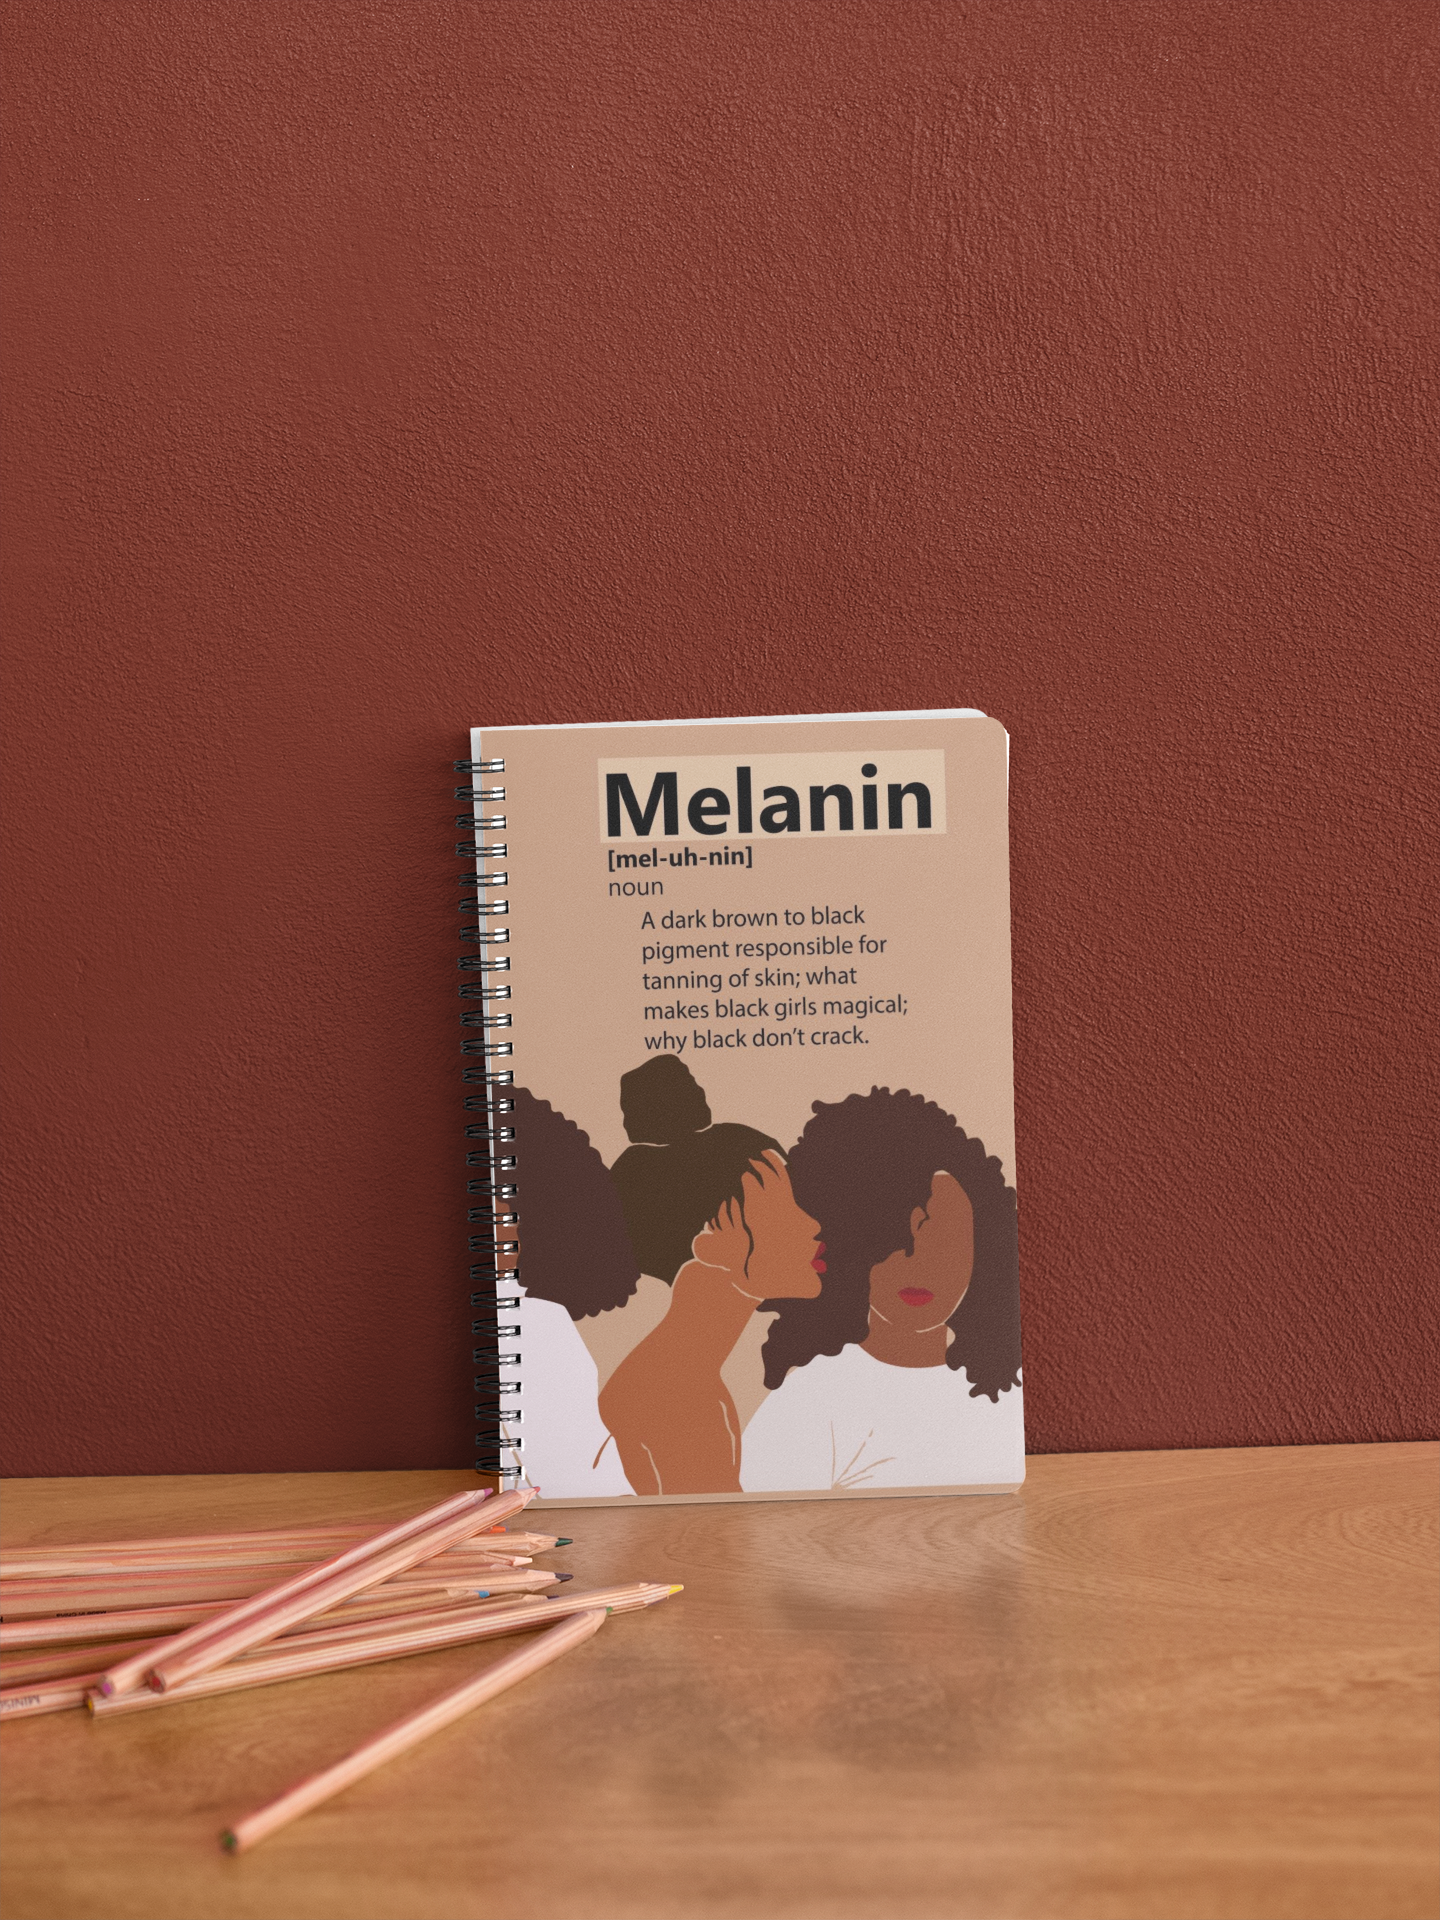 "Melanin" Spiral Notebook